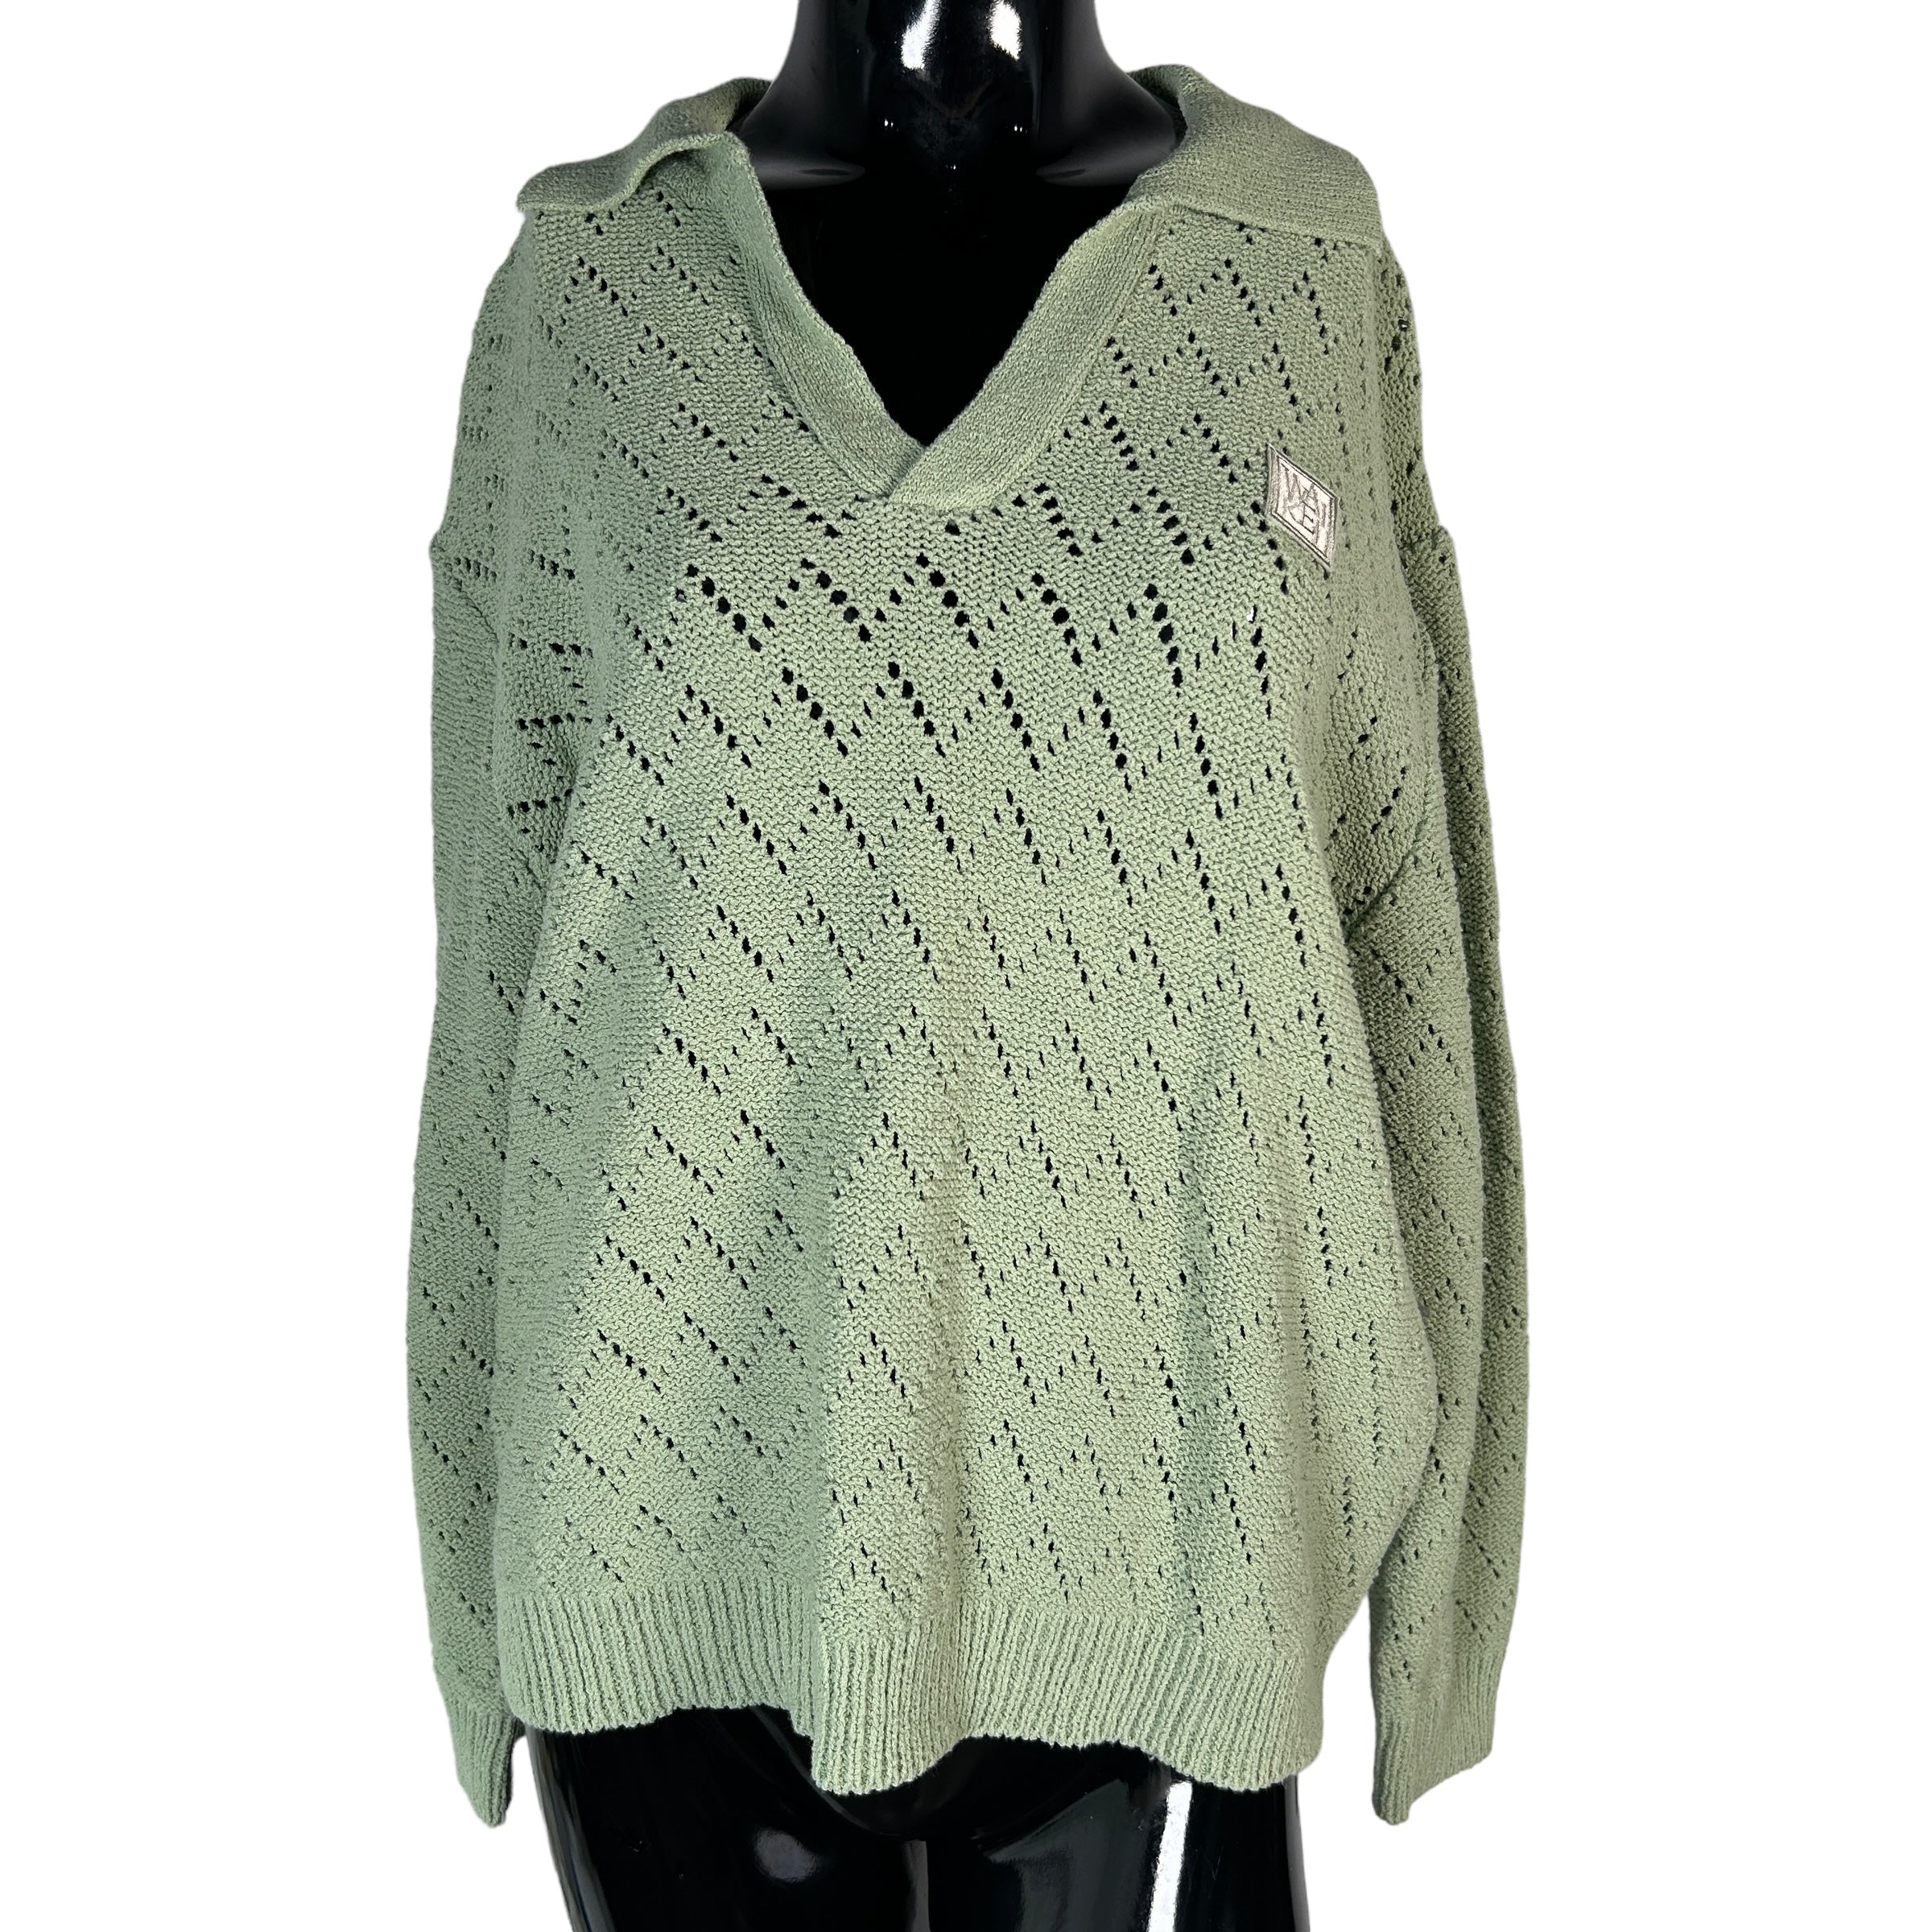 WAI KAI Green Cotton Sweater